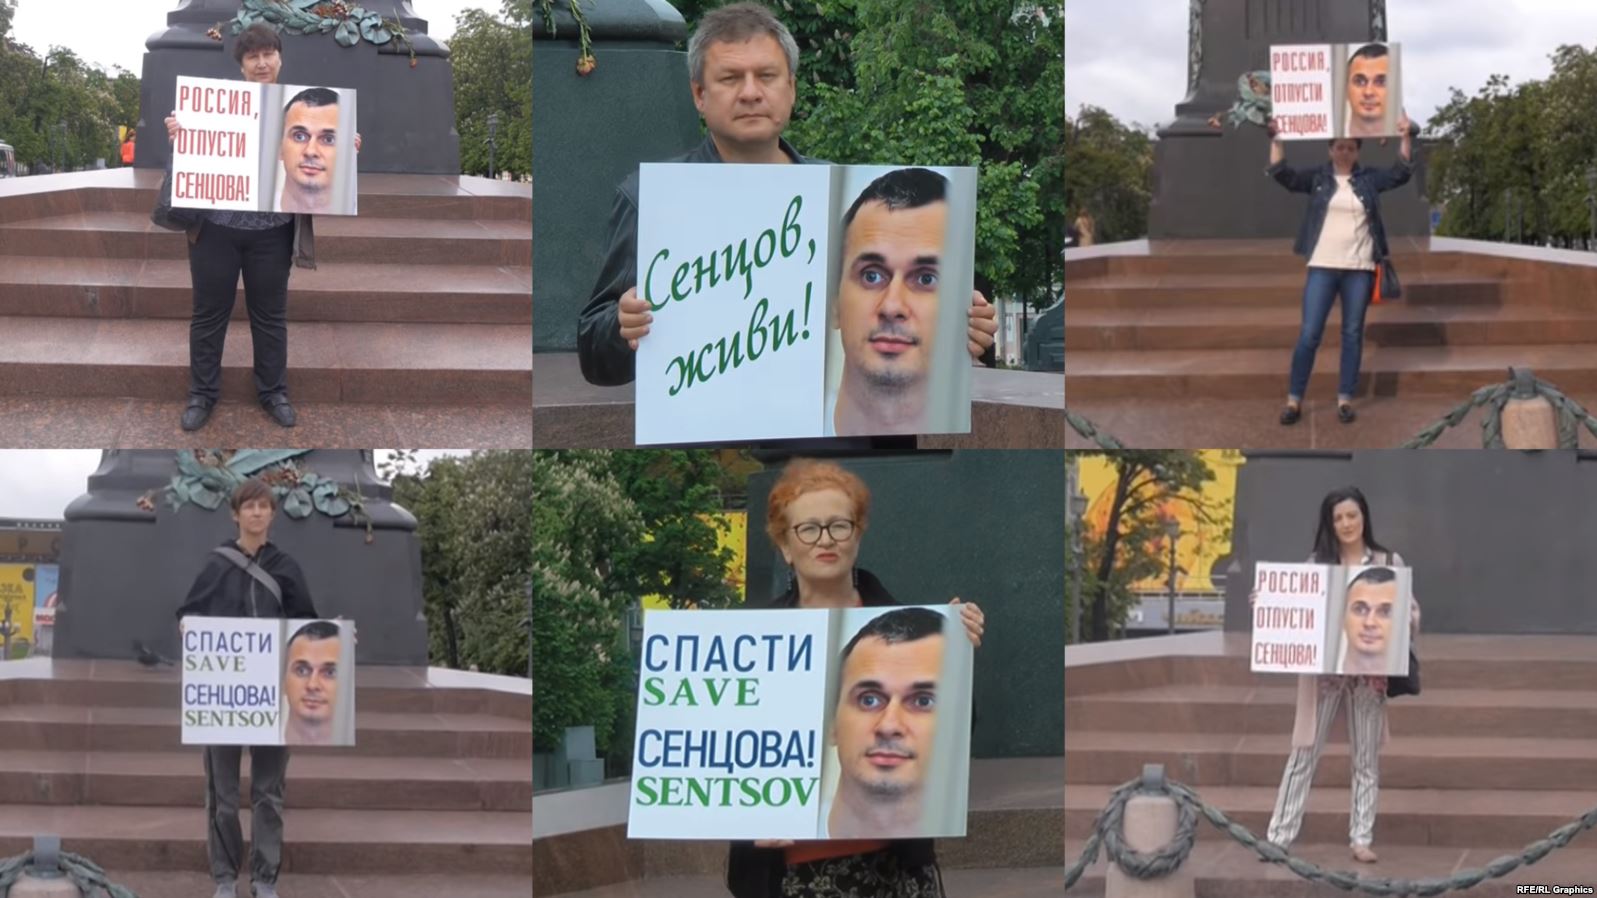 Акция в поддержку Олега Сенцова в России, 19 мая 2018 года